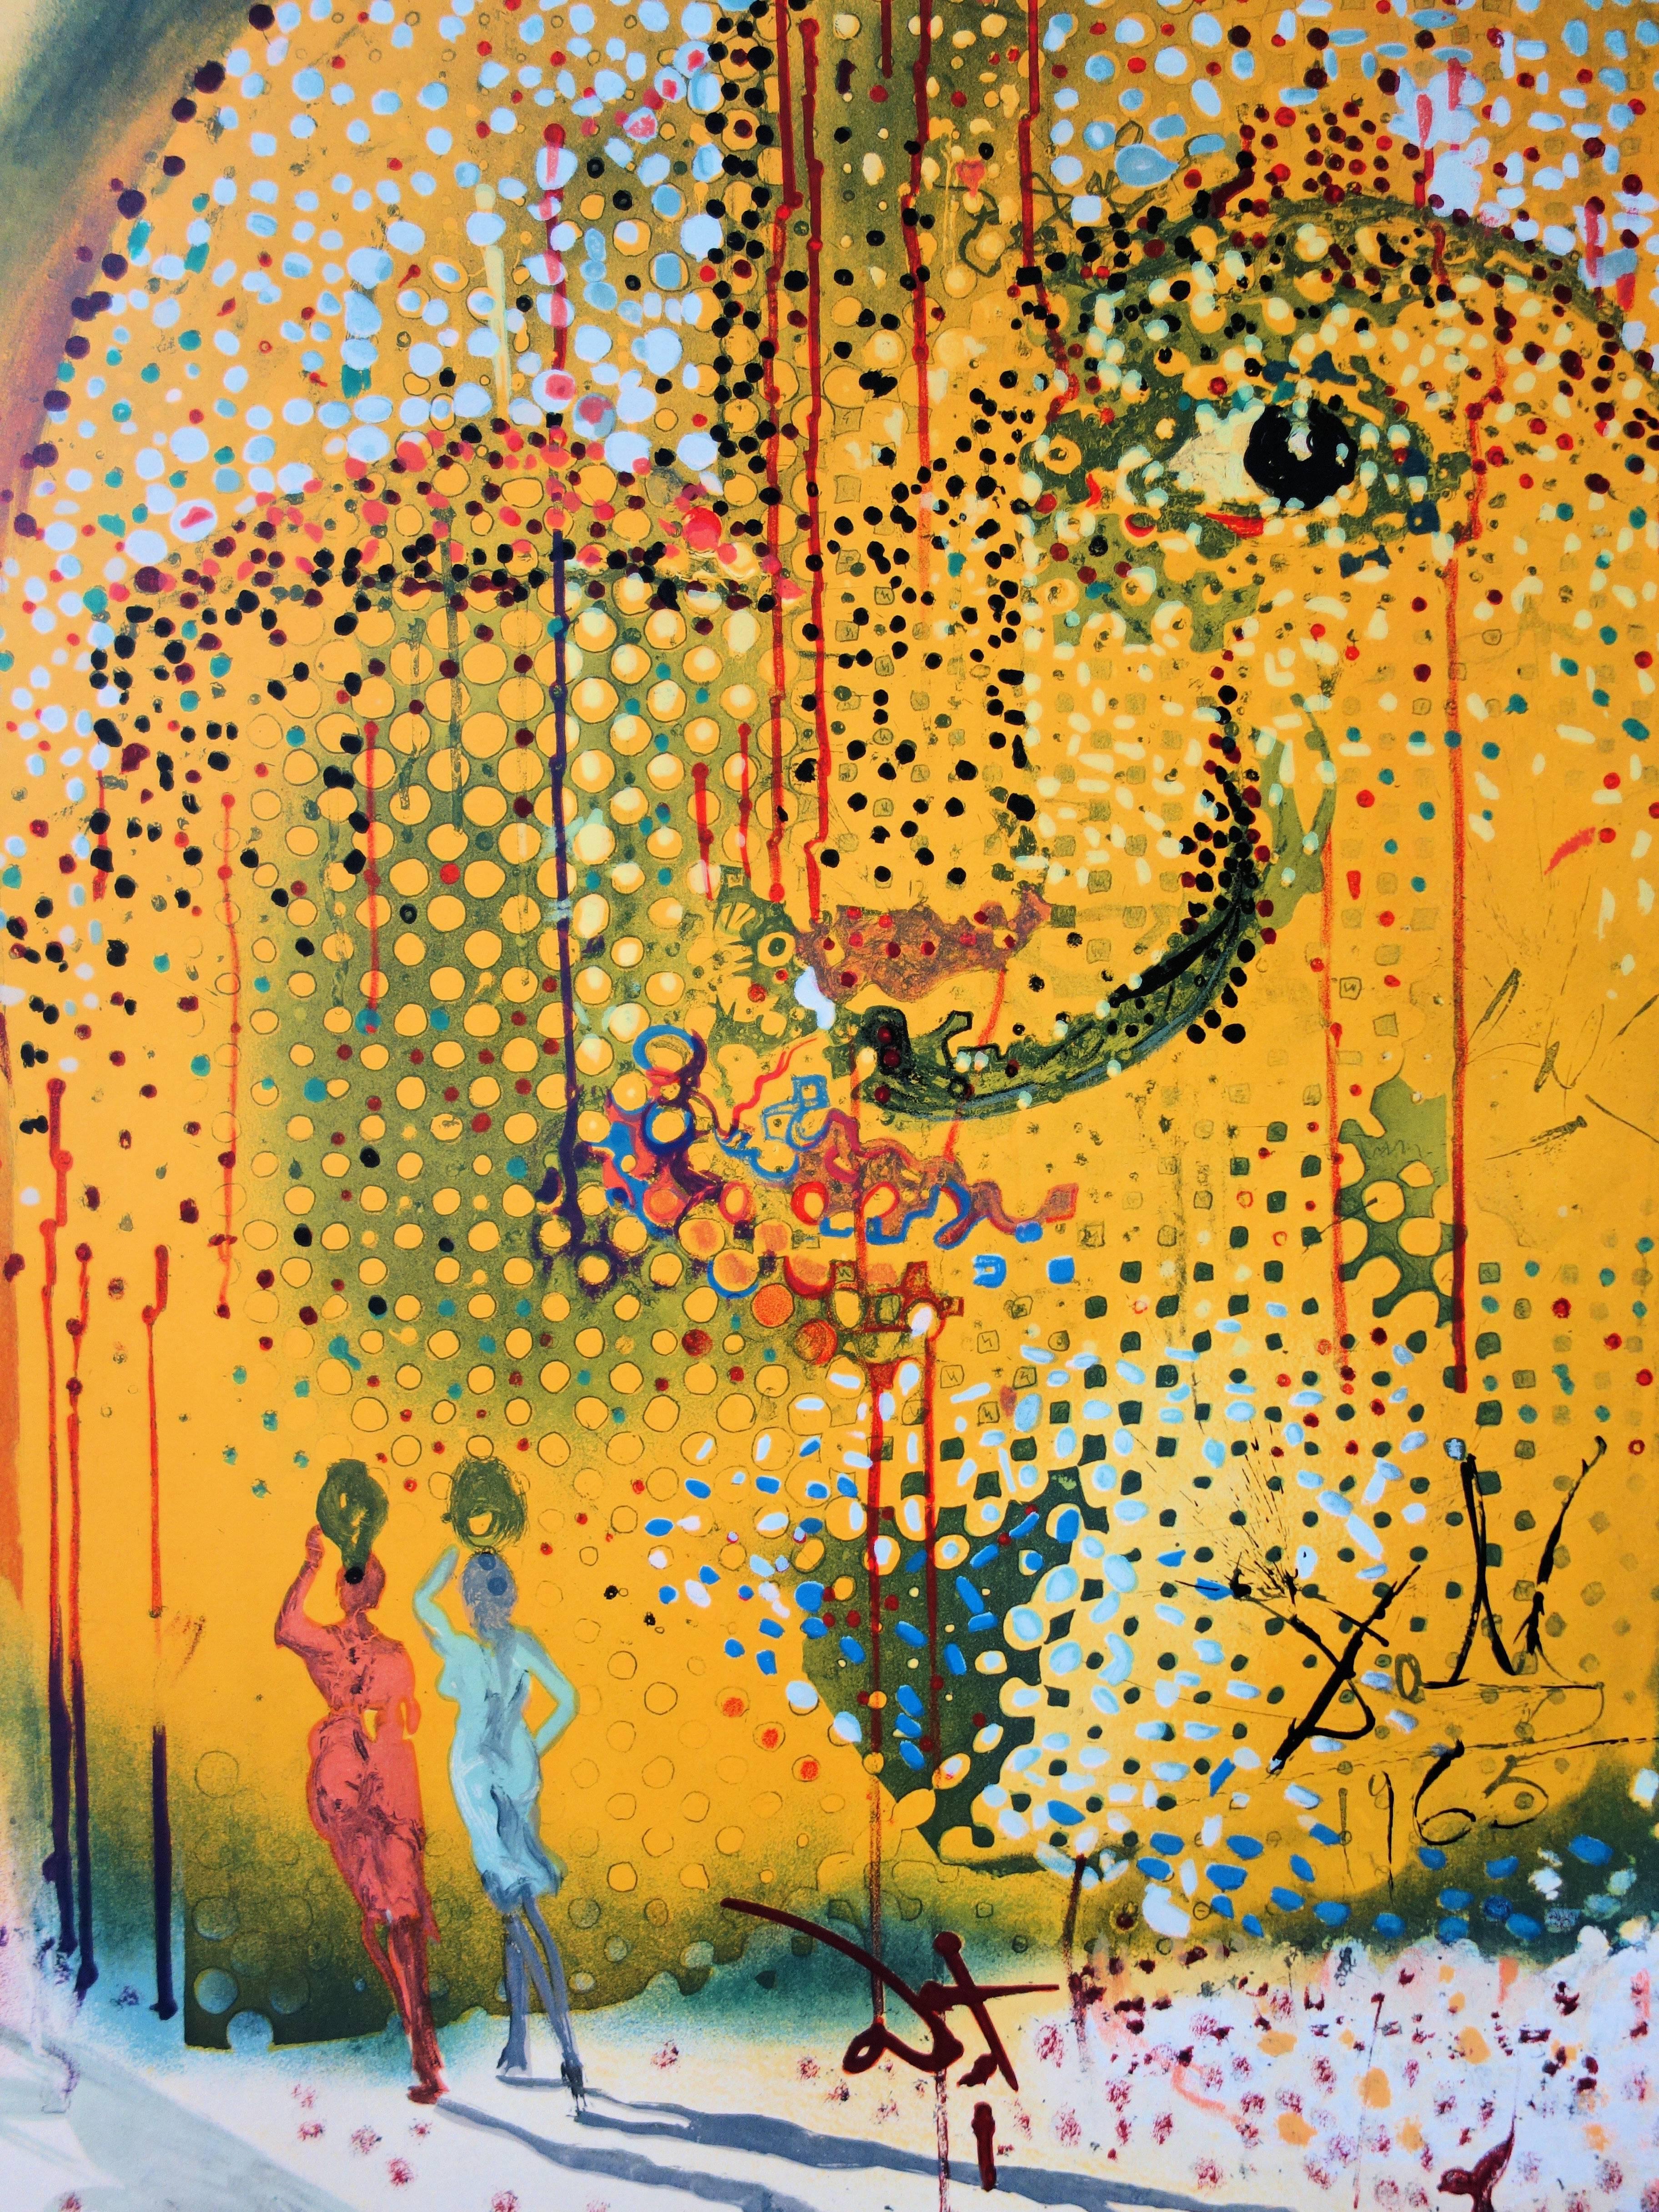 Salvador Dali
Sol y Dali

Klassisches lithografisches Plakat (Werkstatt Mourlot)
Gedruckte Unterschrift auf der Platte
Herausgegeben 1967 von Jean Schneider
Auf Papier 78 x 54 cm (ca. 31 x 22 Zoll)

Referenzen: 
- Katalog raisonne Feld #67-1
-